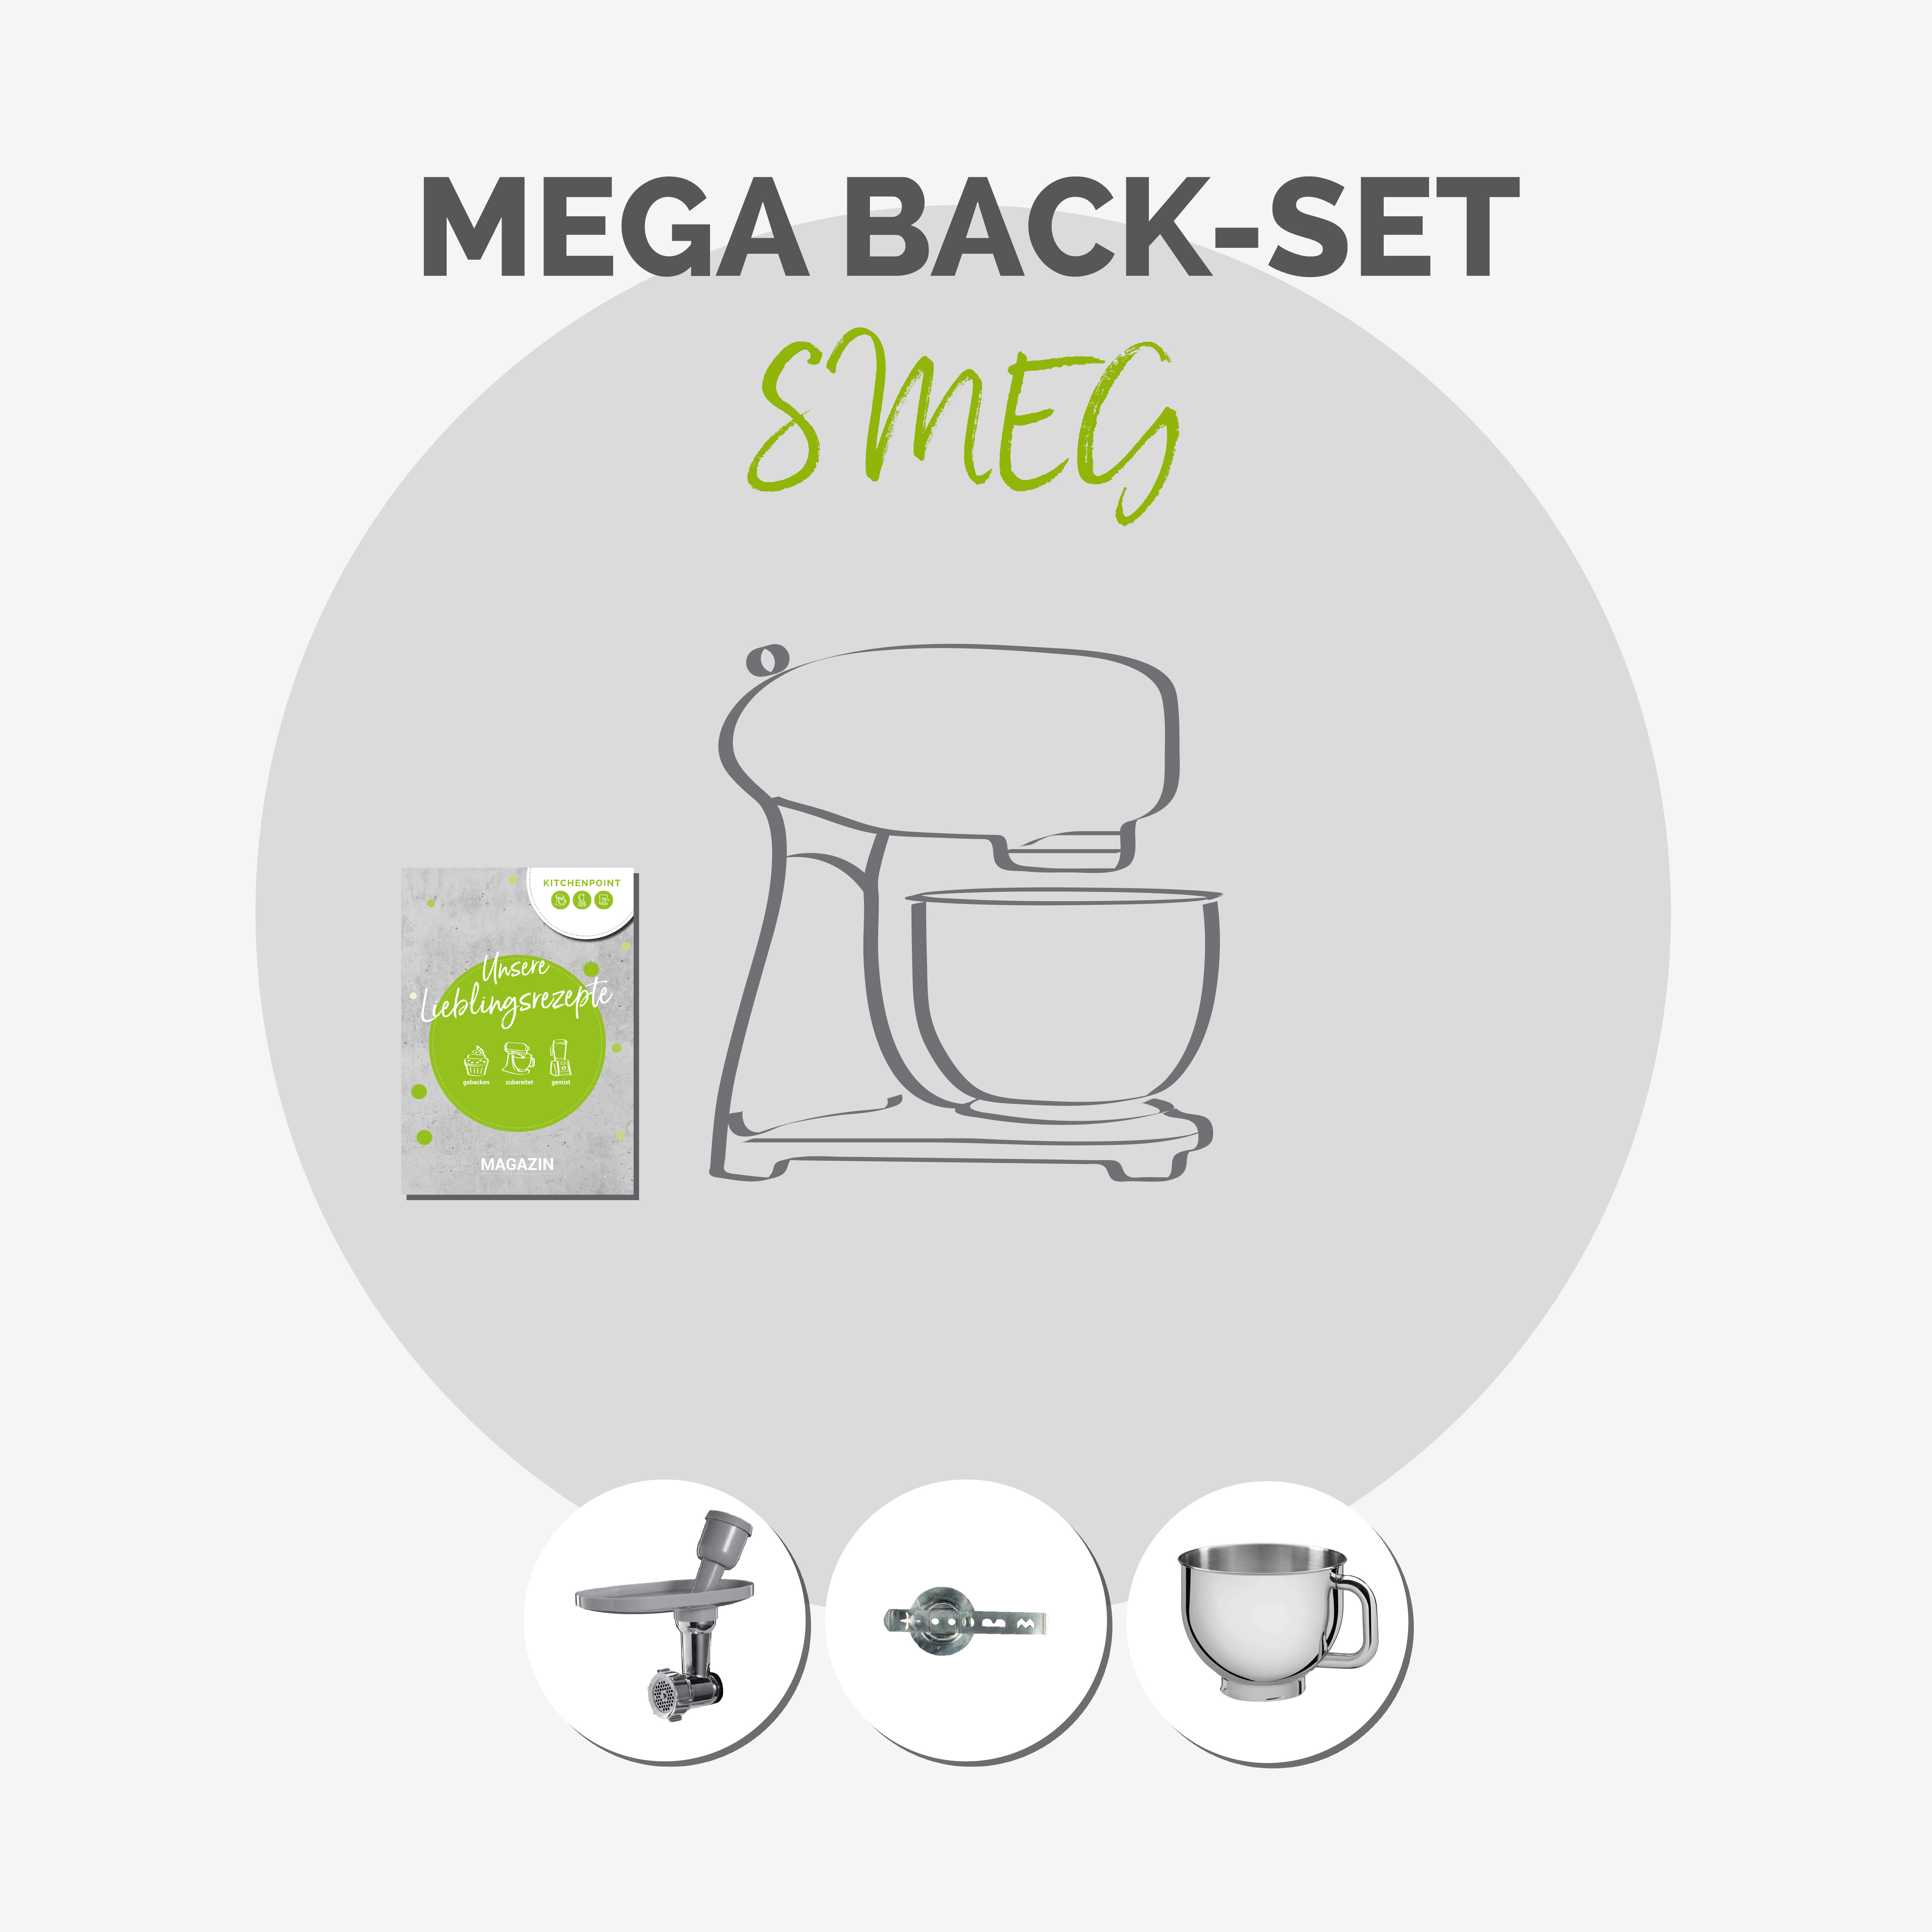 SMEG Küchenmaschine SMF03 Vollfarbe - Back Mega Set Anthrazit-grau